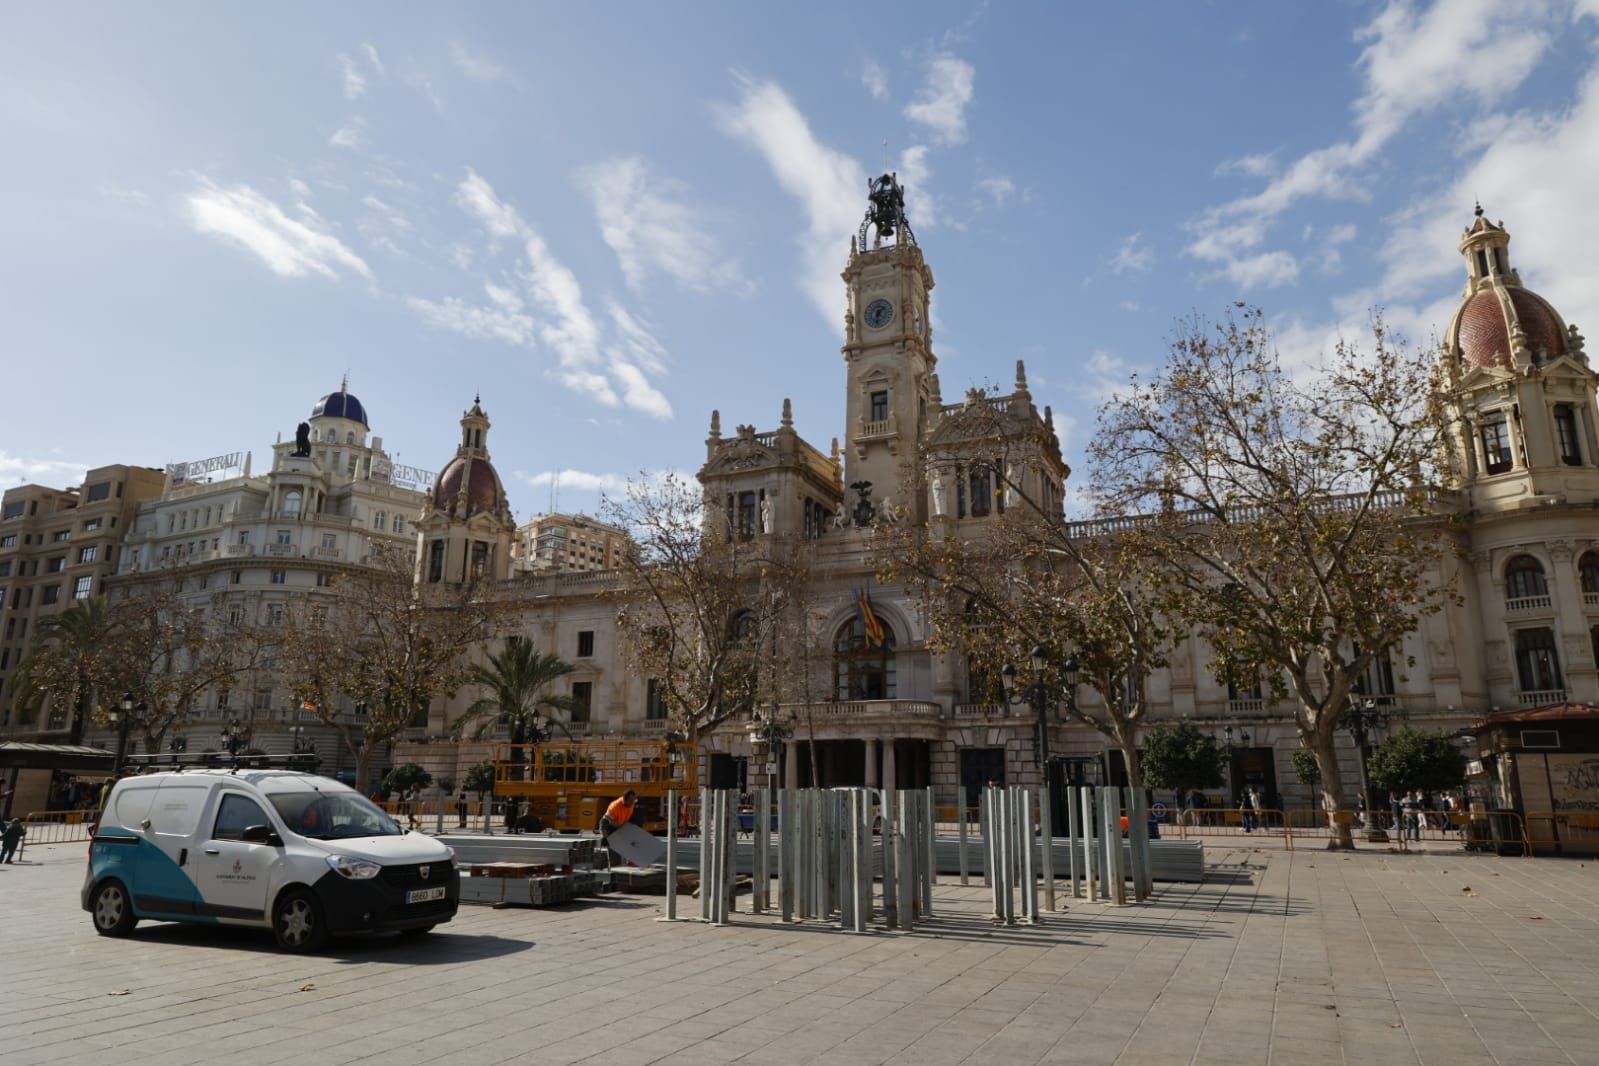 La jaula de la mascletà coge músculo en la plaza del Ayuntamiento